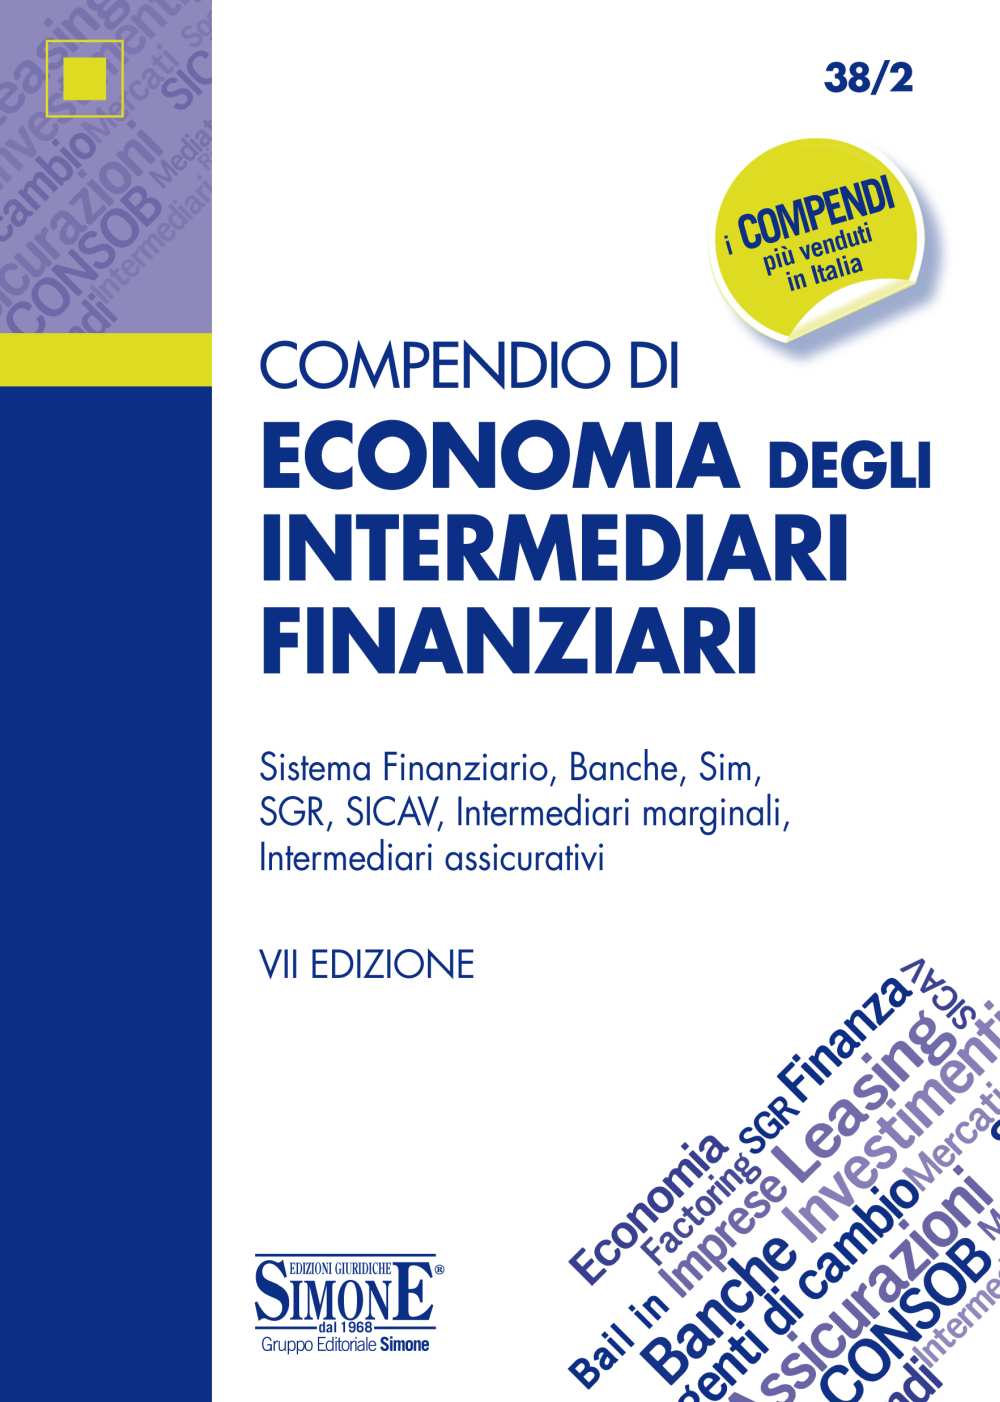 Compendio di Economia degli Intermediari Finanziari